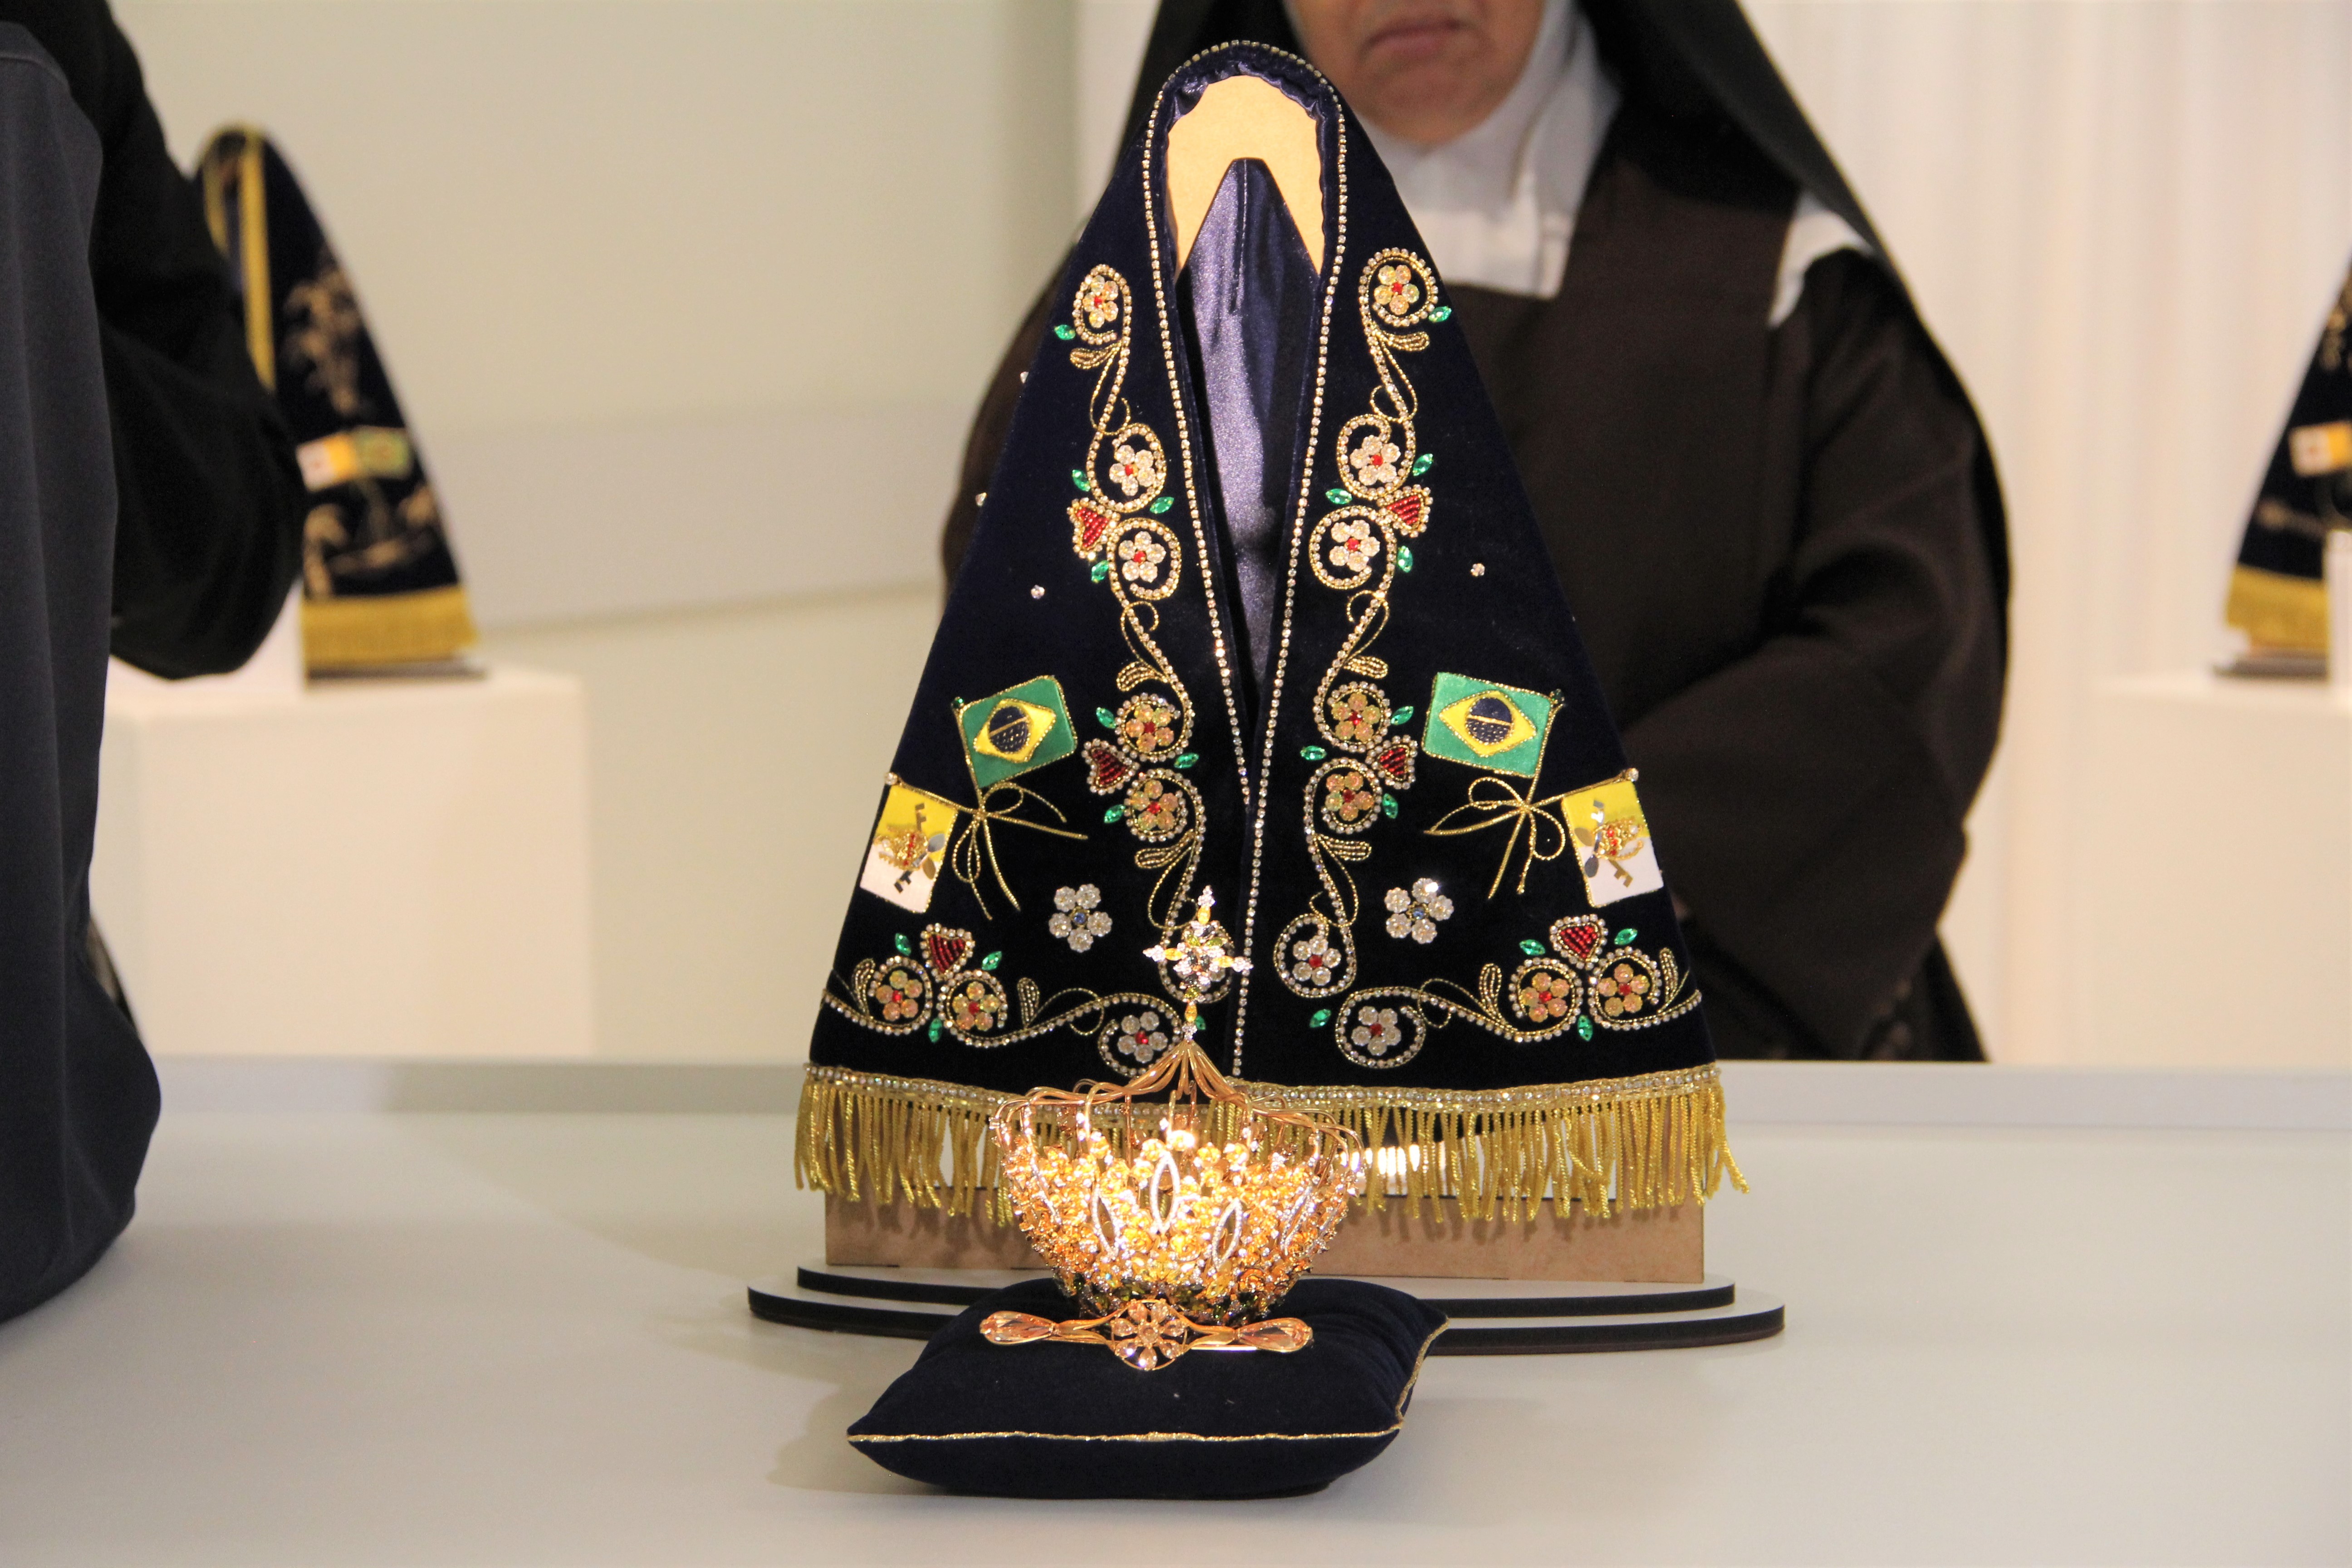 FOTOS: Veja como serão os mantos e o trono usado por Nossa Senhora Aparecida na Festa da Padroeira